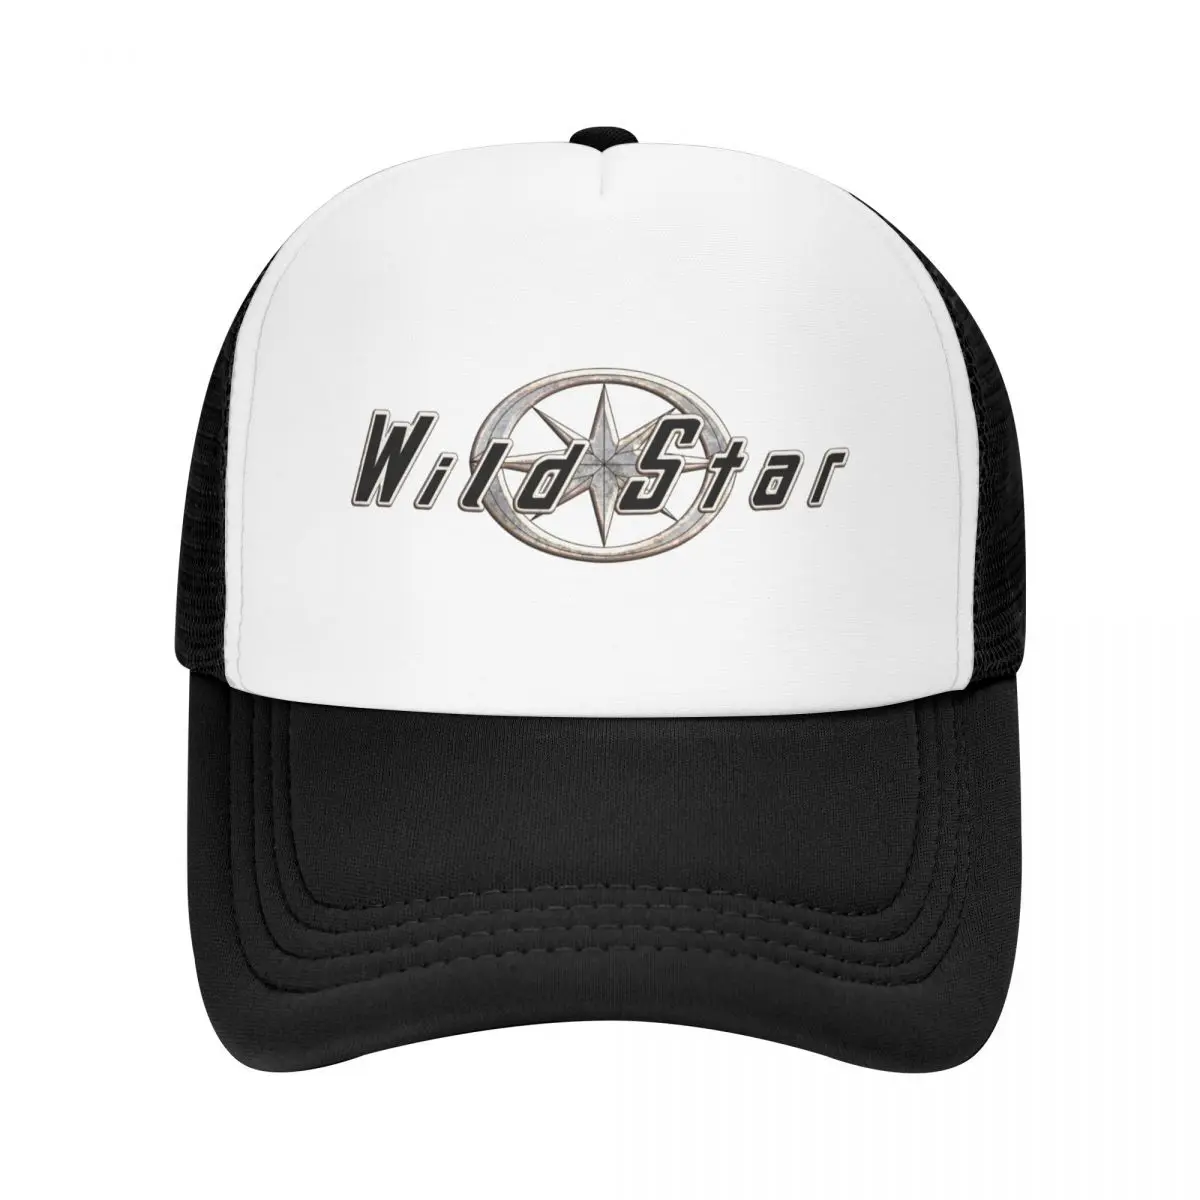 Wild Star, Wildstar XV 1600 Logotipo de Metal Gorra de Béisbol de la playa sombrero de Hip Hop Bolsa de Playa Mujeres Golf Desgaste de los Hombres . ' - ' . 0